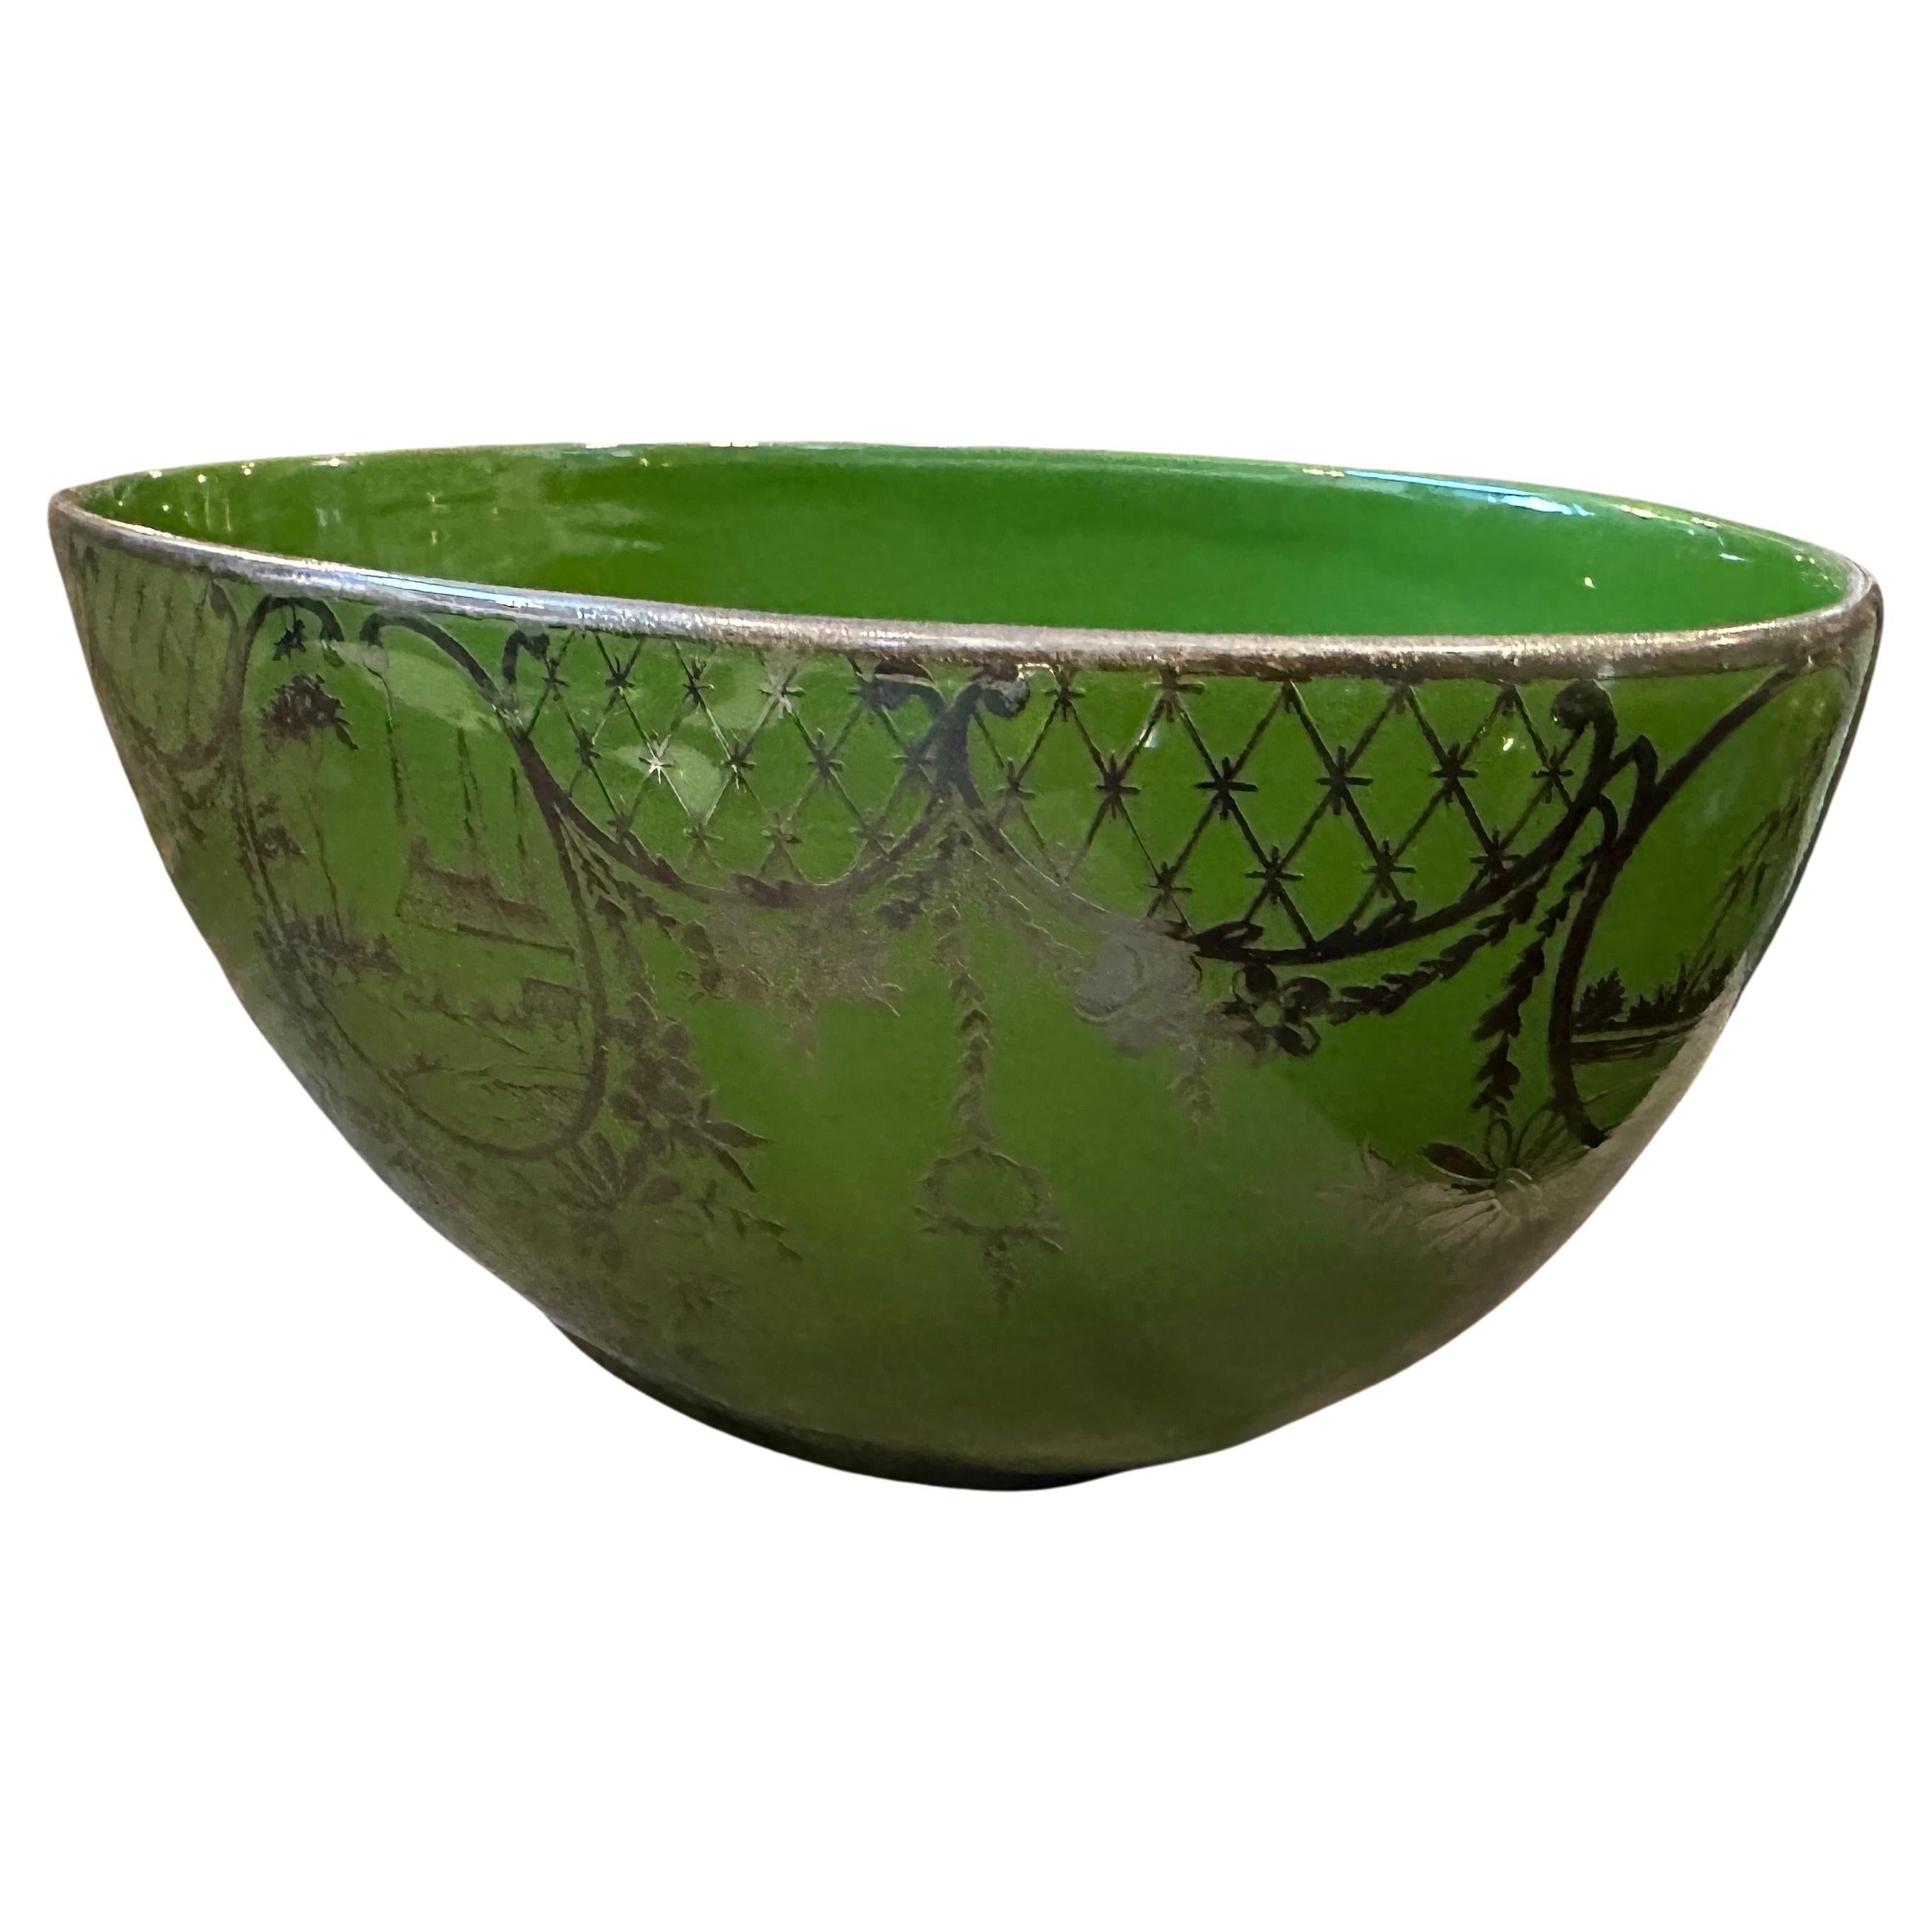 Ovaler Tafelaufsatz aus grüner Keramik und Silber im Art-Déco-Stil, der in den vierziger Jahren in Italien hergestellt wurde. Ovale Keramik in einem grünen Farbton mit glasierter Oberfläche und Dekoren aus Sterlingsilber. Die Verwendung von grüner